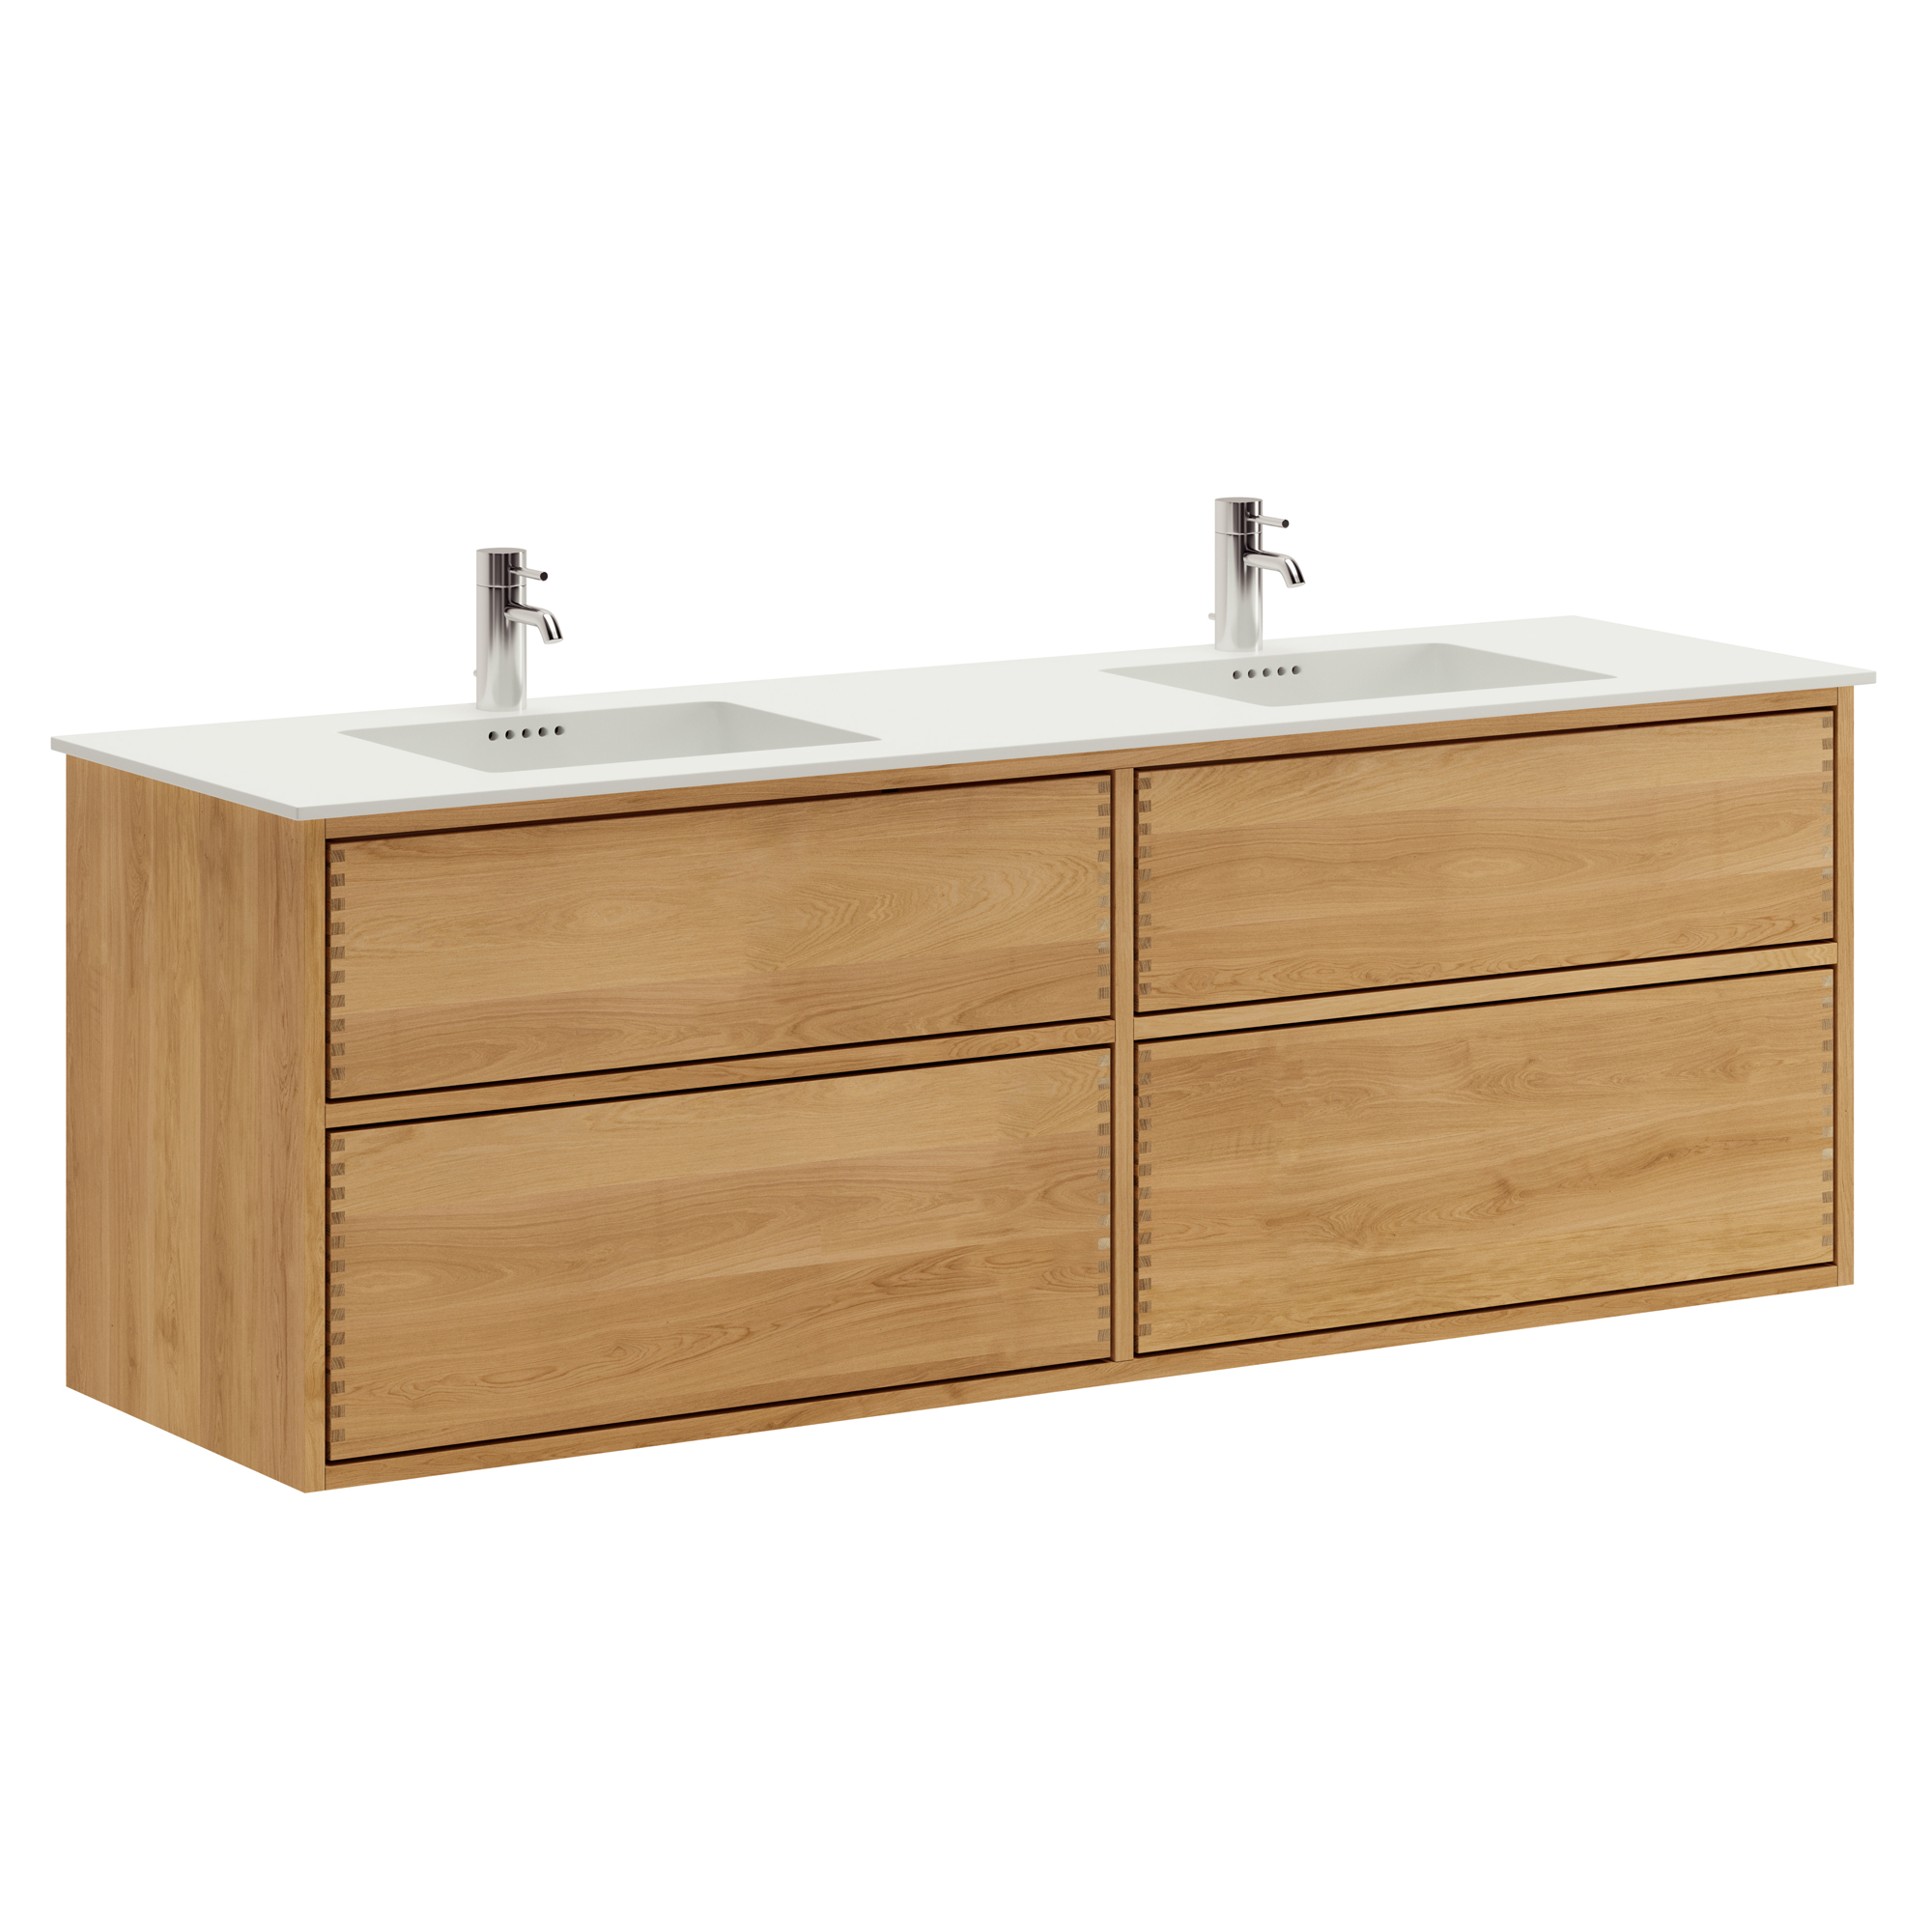 160 cm Ljusoljad Just Wood Push badrumsmöbel med 4 lådor och Solid Surface bänkskiva - Dubbel tvättställ